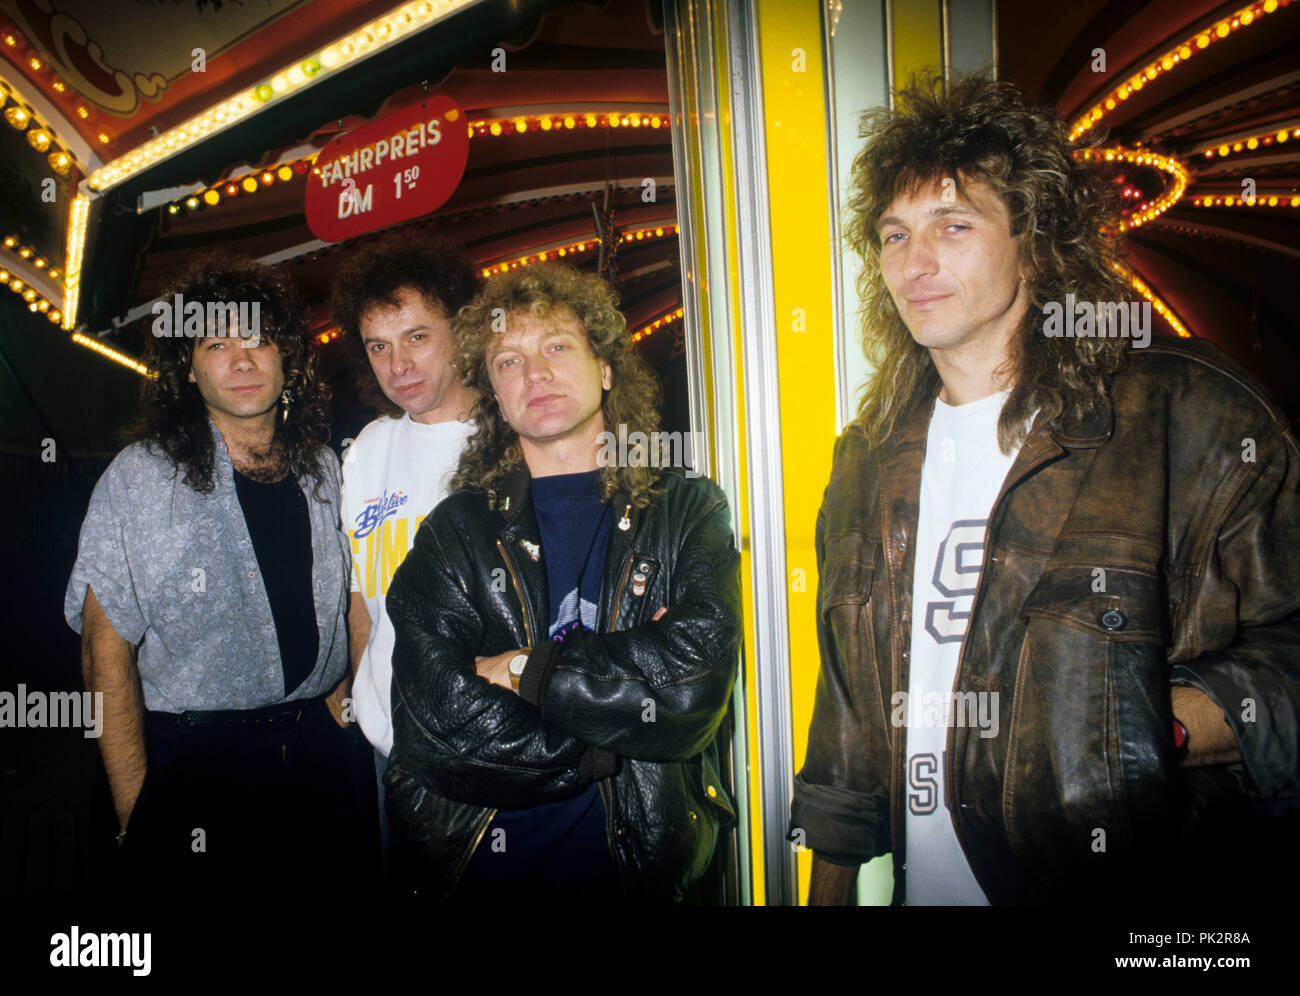 Foreigner (mit Sänger Lou Gramm) on 30.09.1987 in München / Munich. | usage worldwide Stock Photo